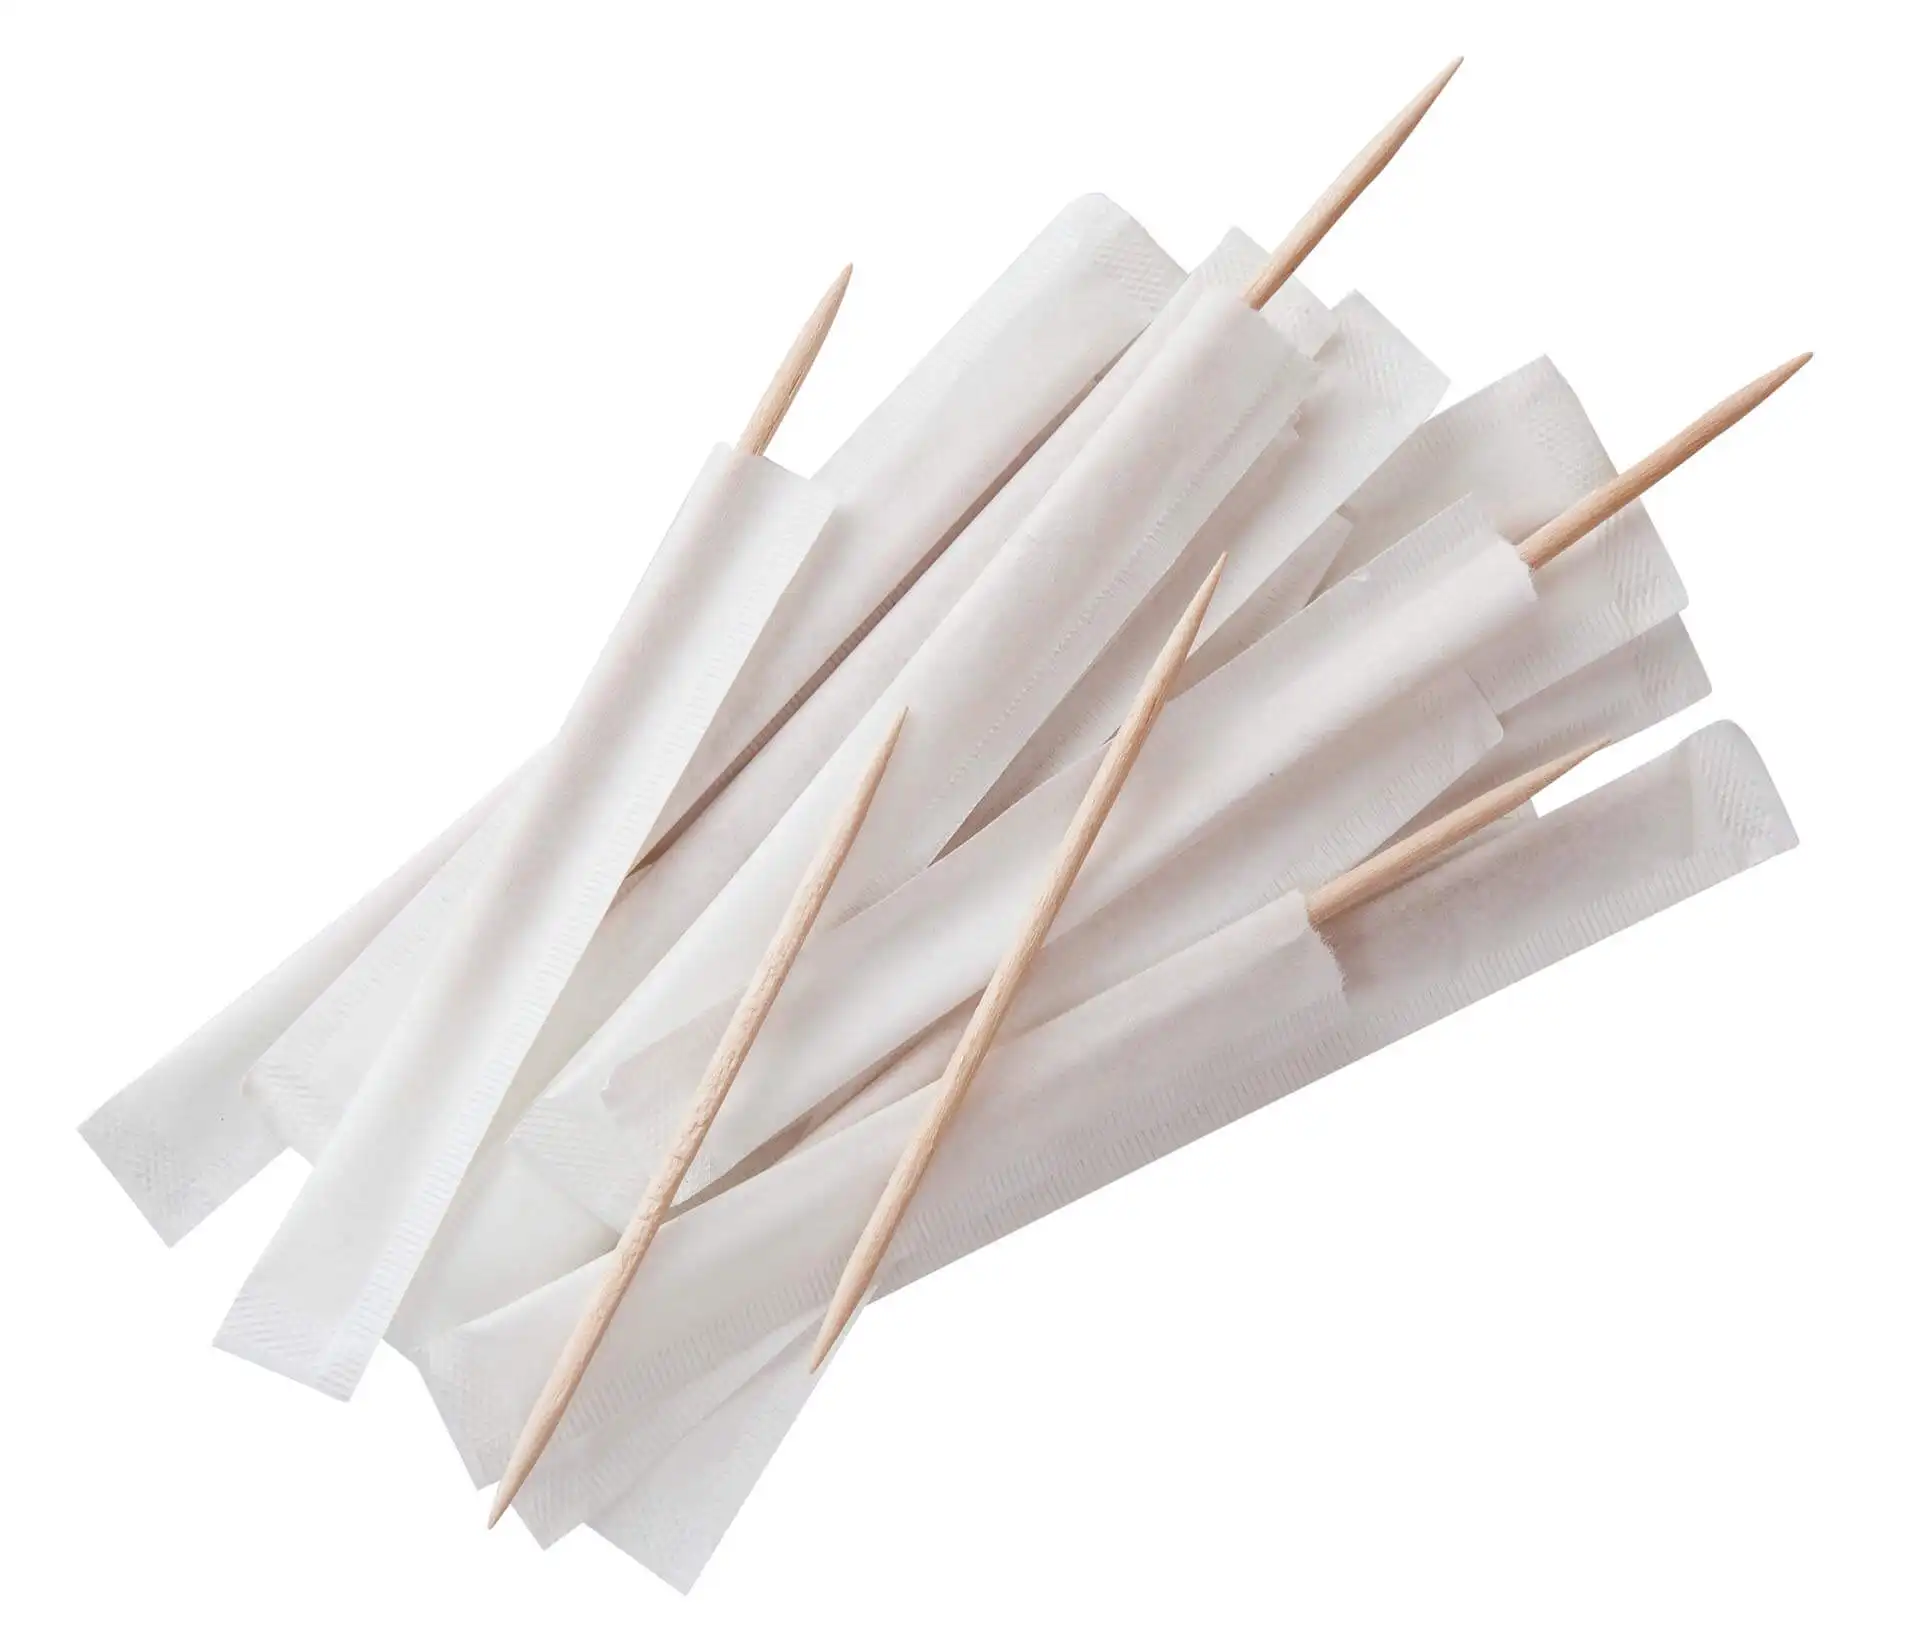 Зубочистки в бумажной упаковке, индивидуальные зубочистки, бамбуковые зубочистки диаметром 2,0 мм, оптовая продажа